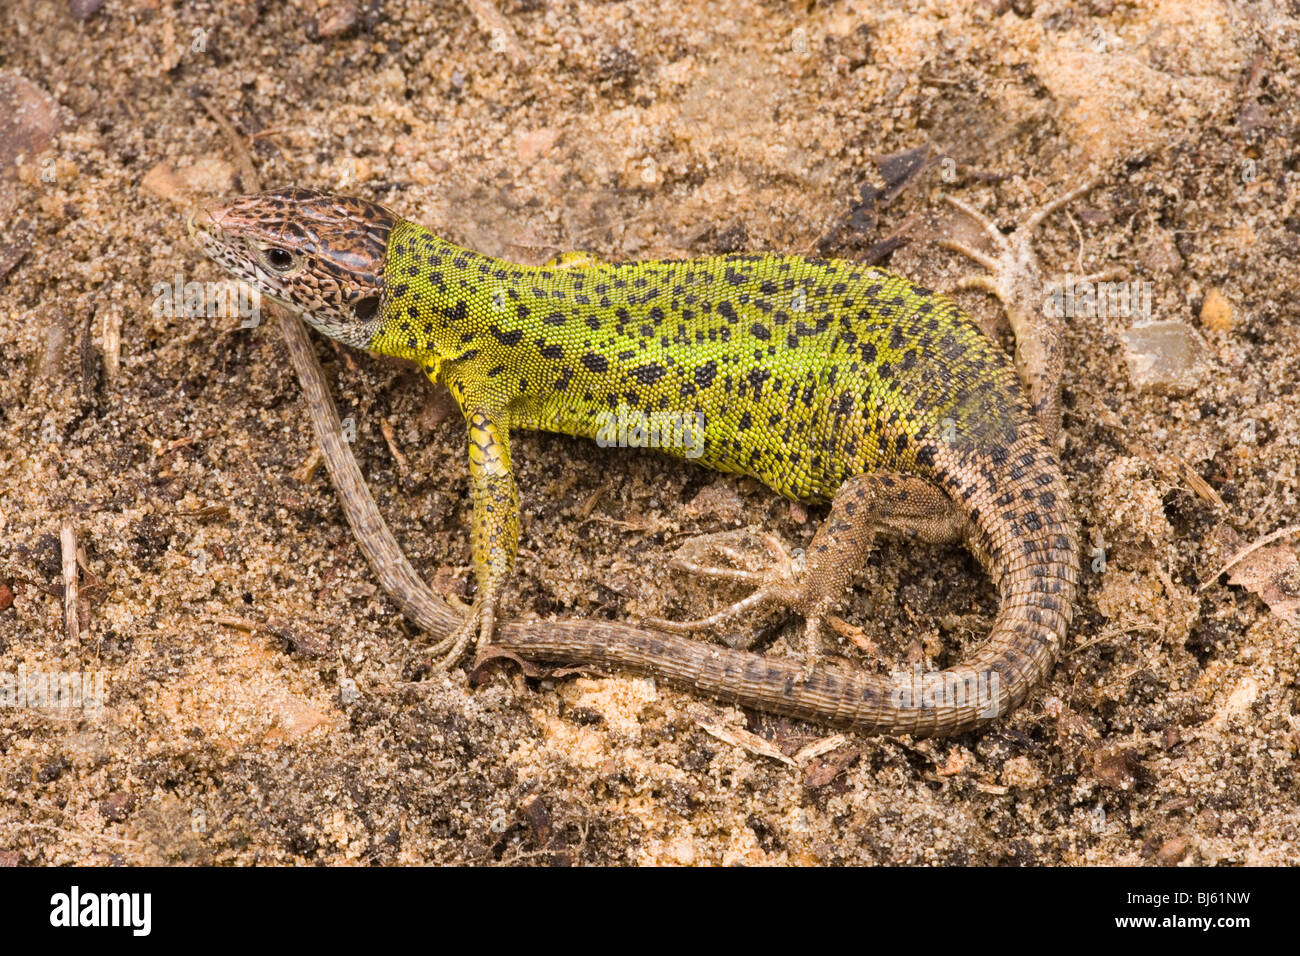 Schreiber's Green Lizard (Lacerta schreiberi). Gravid female. North Spain. Stock Photo